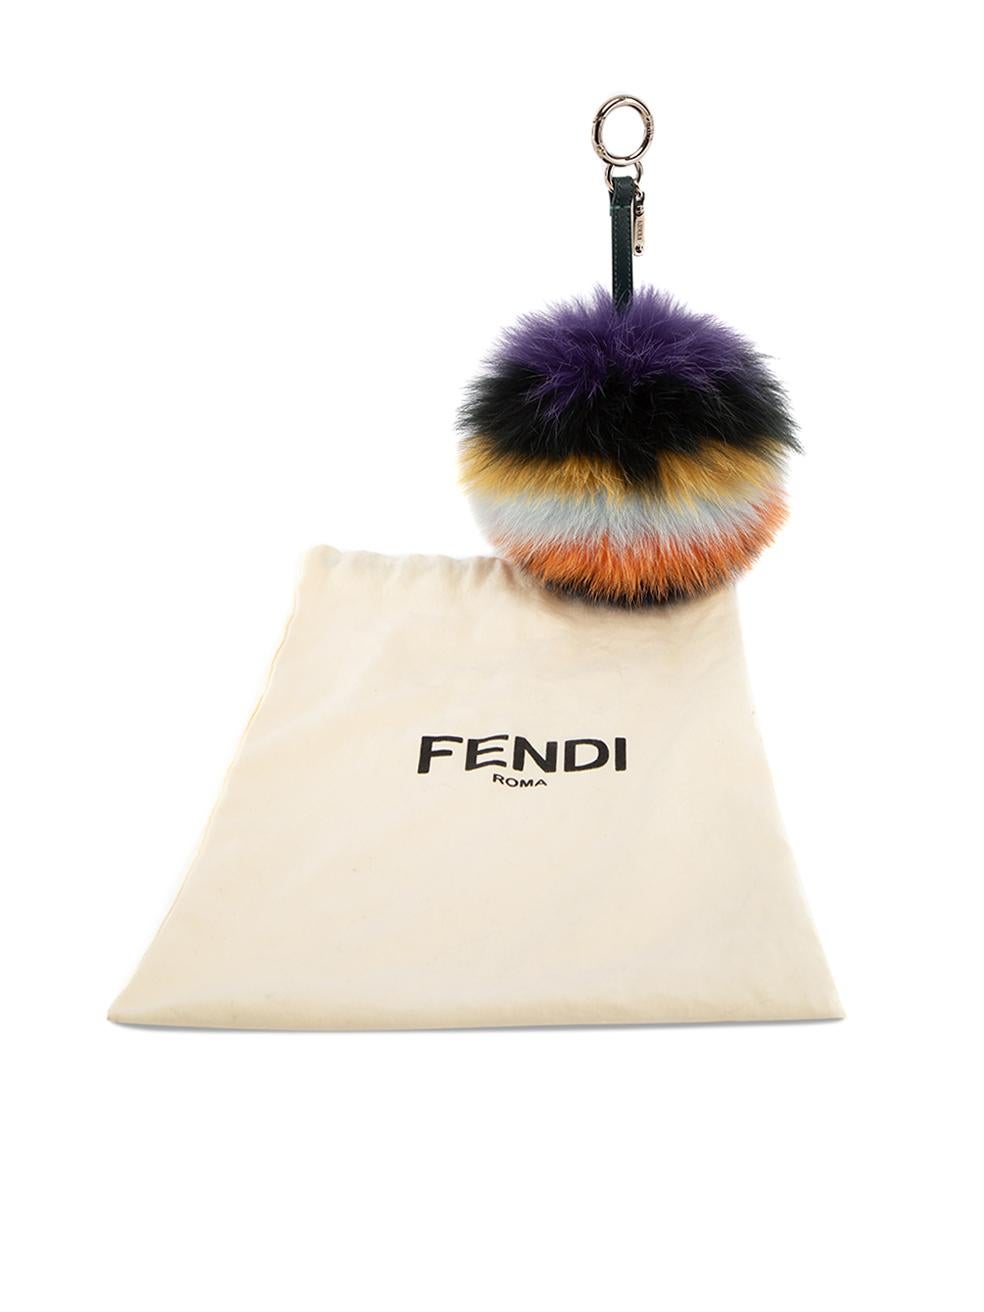 Pre-Loved Fendi Women's Multicolour Fur Pom Pom Keyring 1